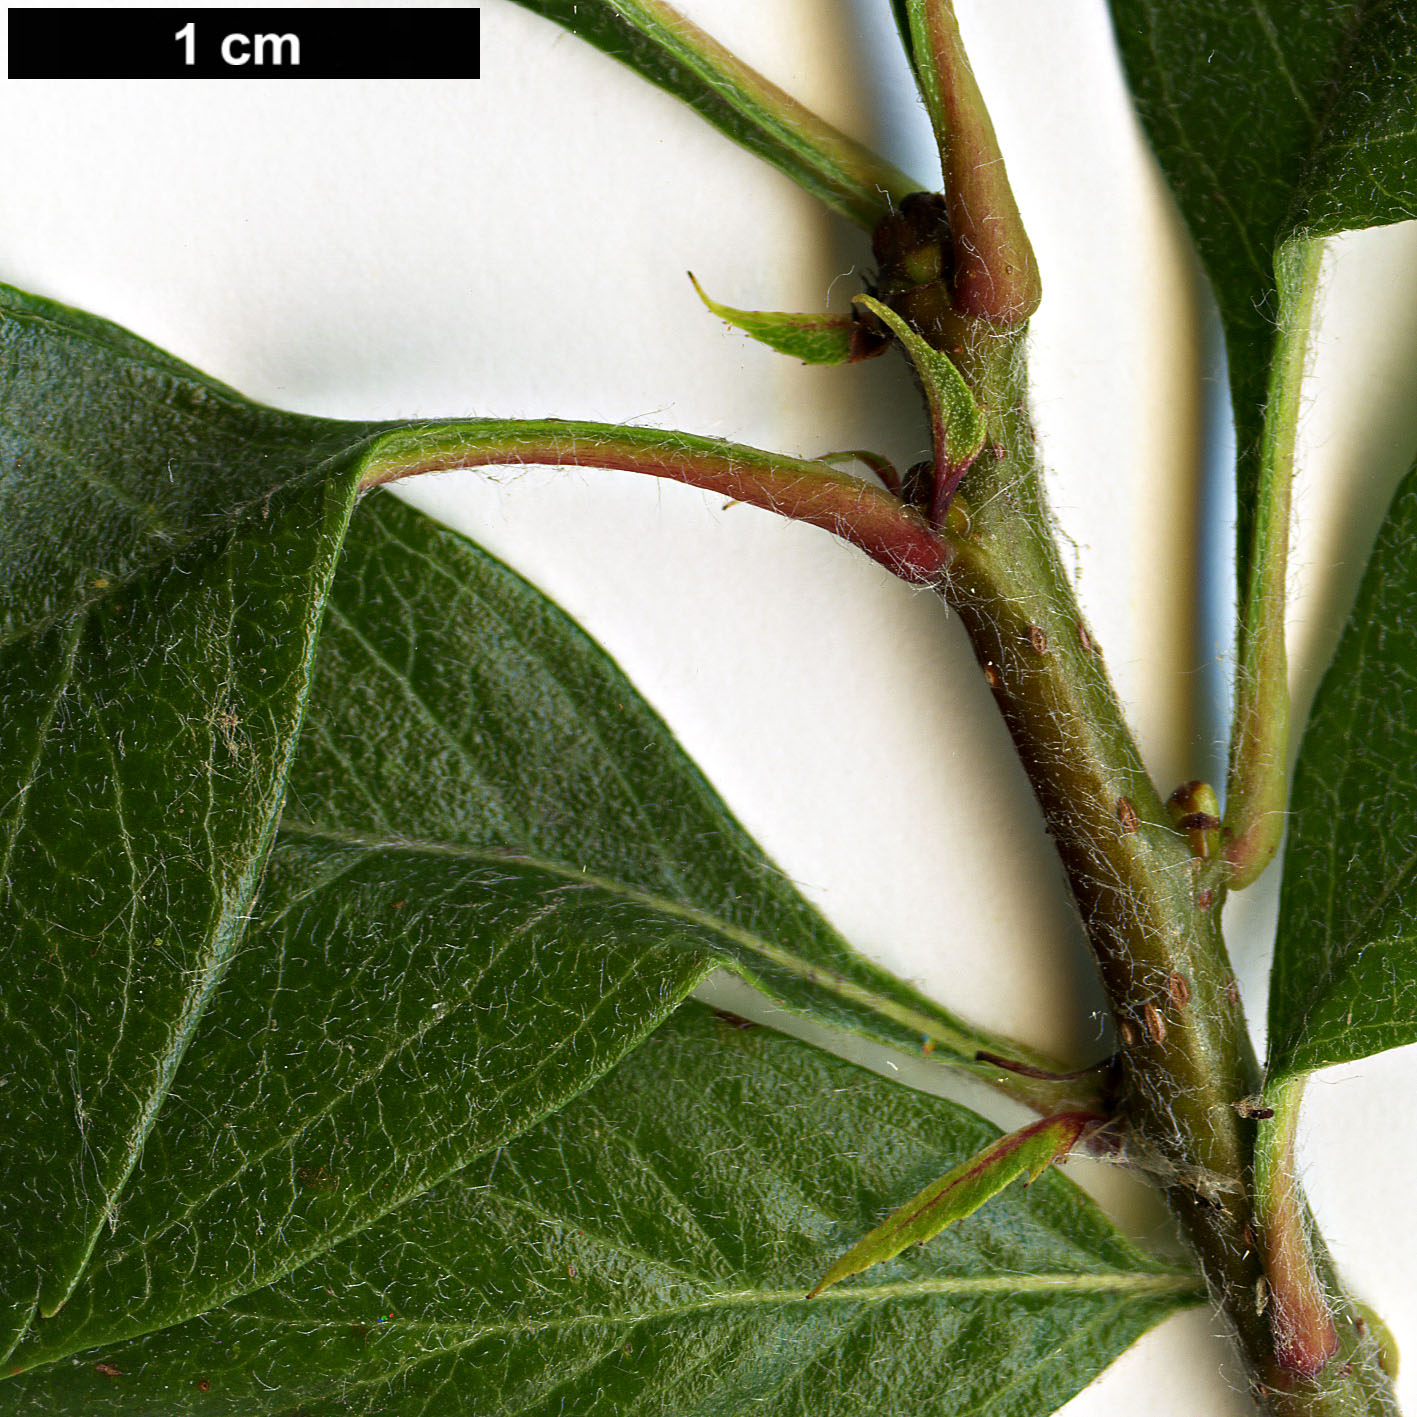 High resolution image: Family: Rosaceae - Genus: Crataegus - Taxon: ×grignonensis (C.mexicana ×)